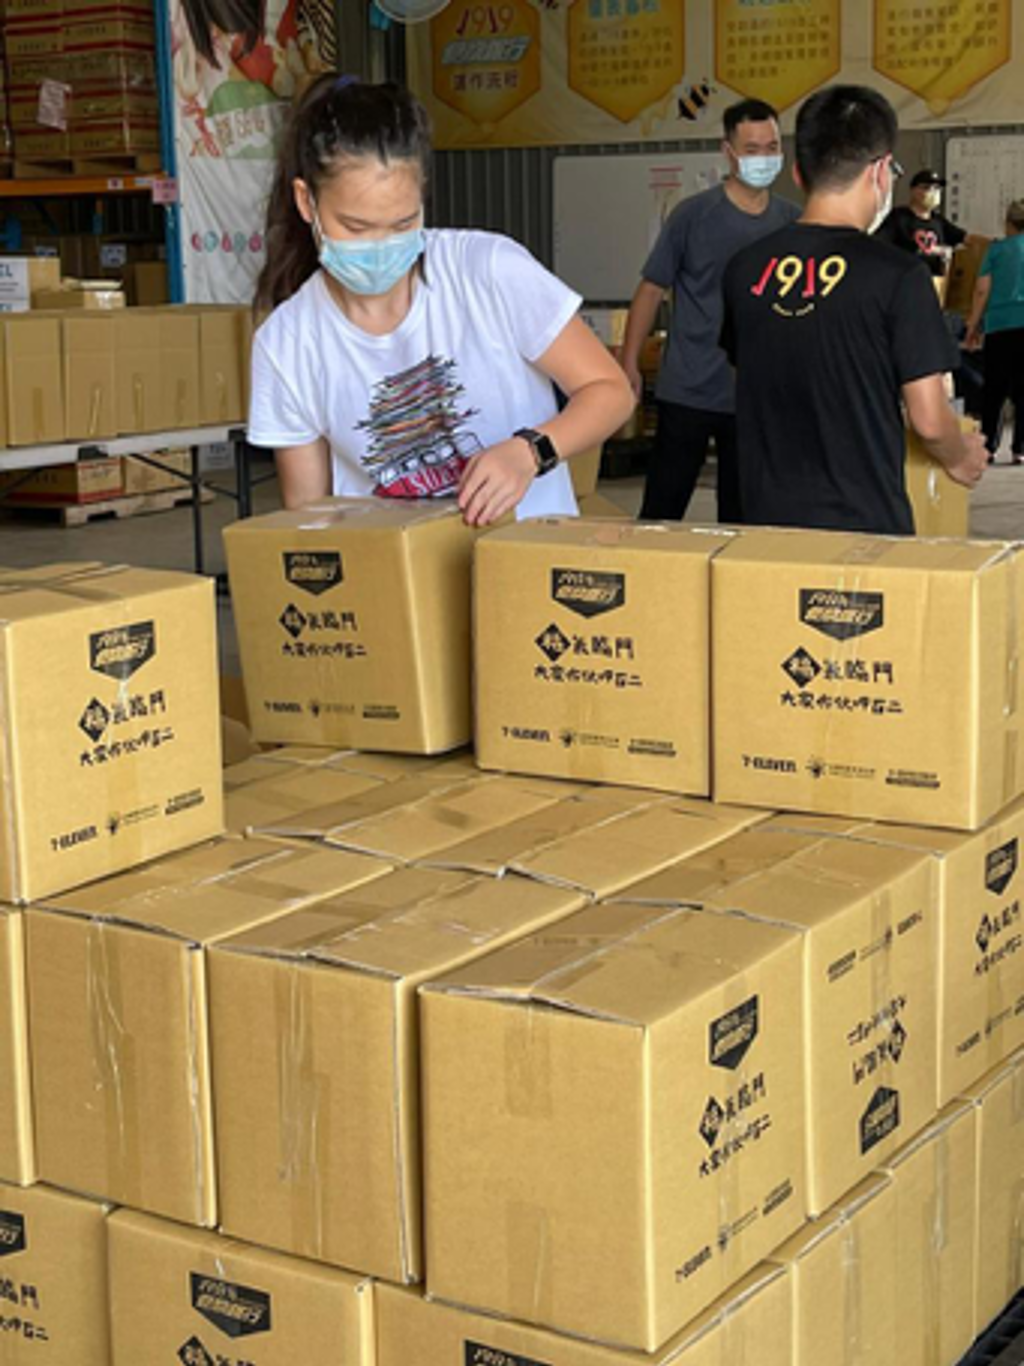 「瓦城慈善基金會」執行長吳丹鳳的女兒徐于心出力幫忙打包一千份防疫物資箱。(圖/瓦城慈善基金會提供)